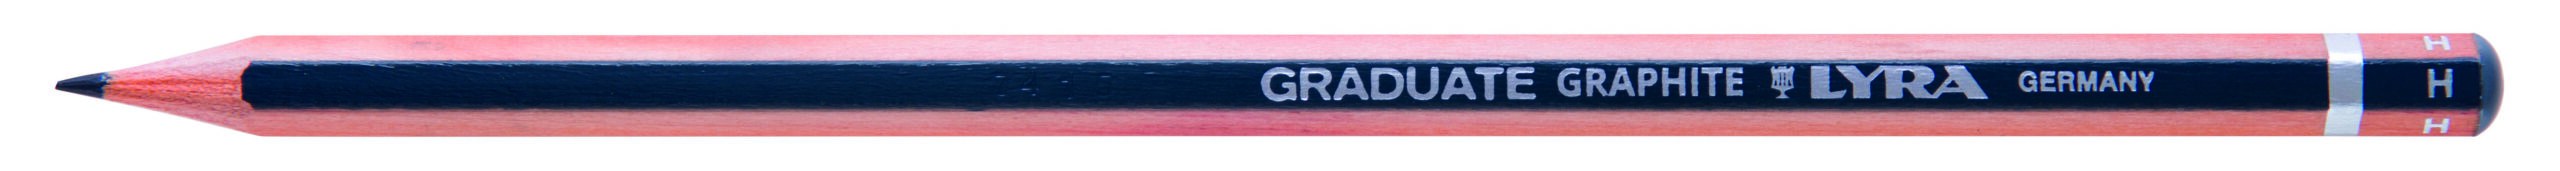 Pieštukas GRADUATE GRAPHITE H L1170111 FILA/LYRA, R05-806